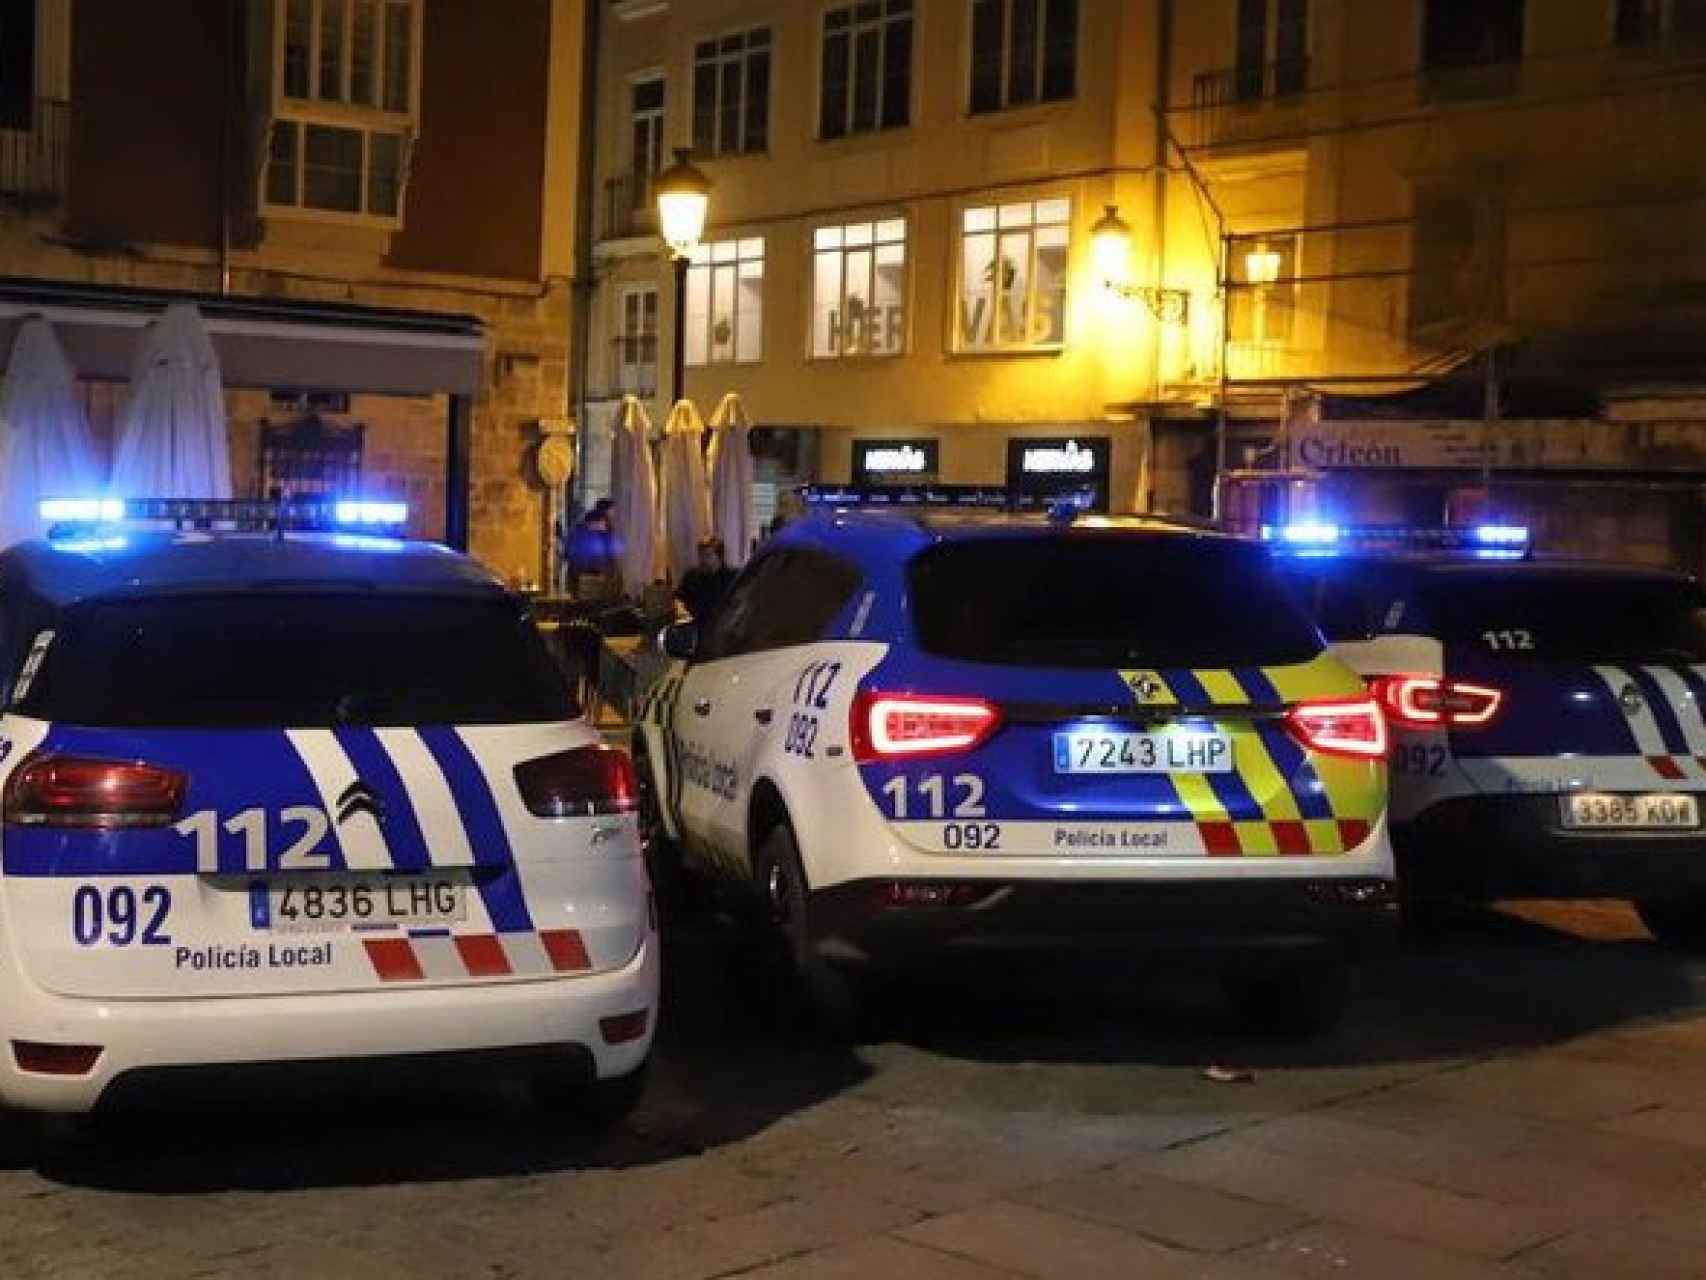 Imagen de vehículos de la Policia Local de Burgos.